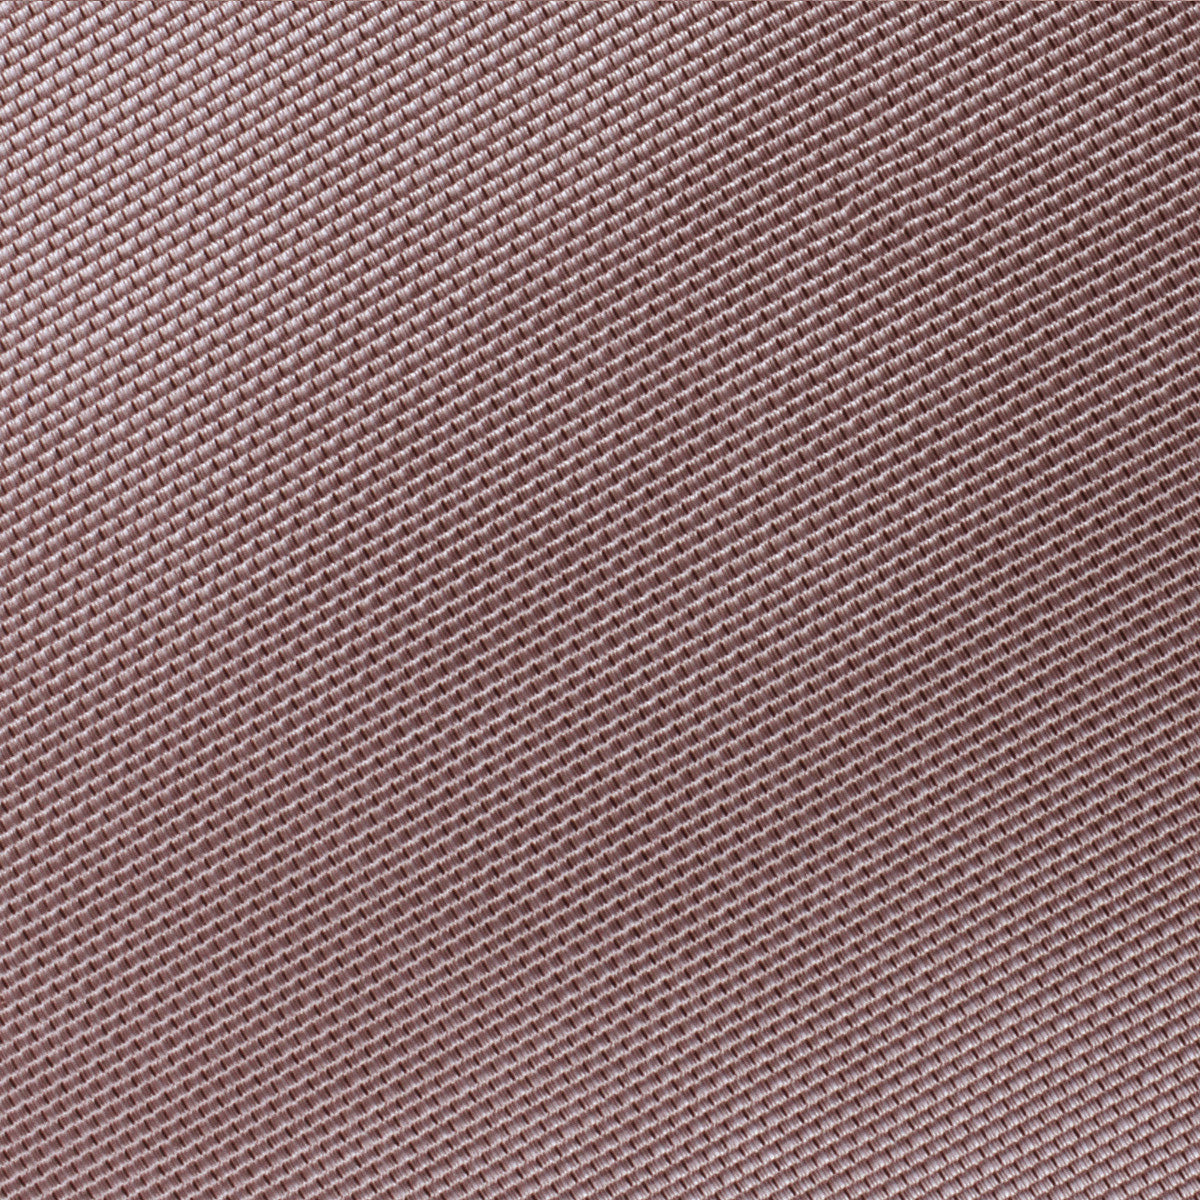 Dusty Mauve Quartz Weave Self Bow Tie Fabric